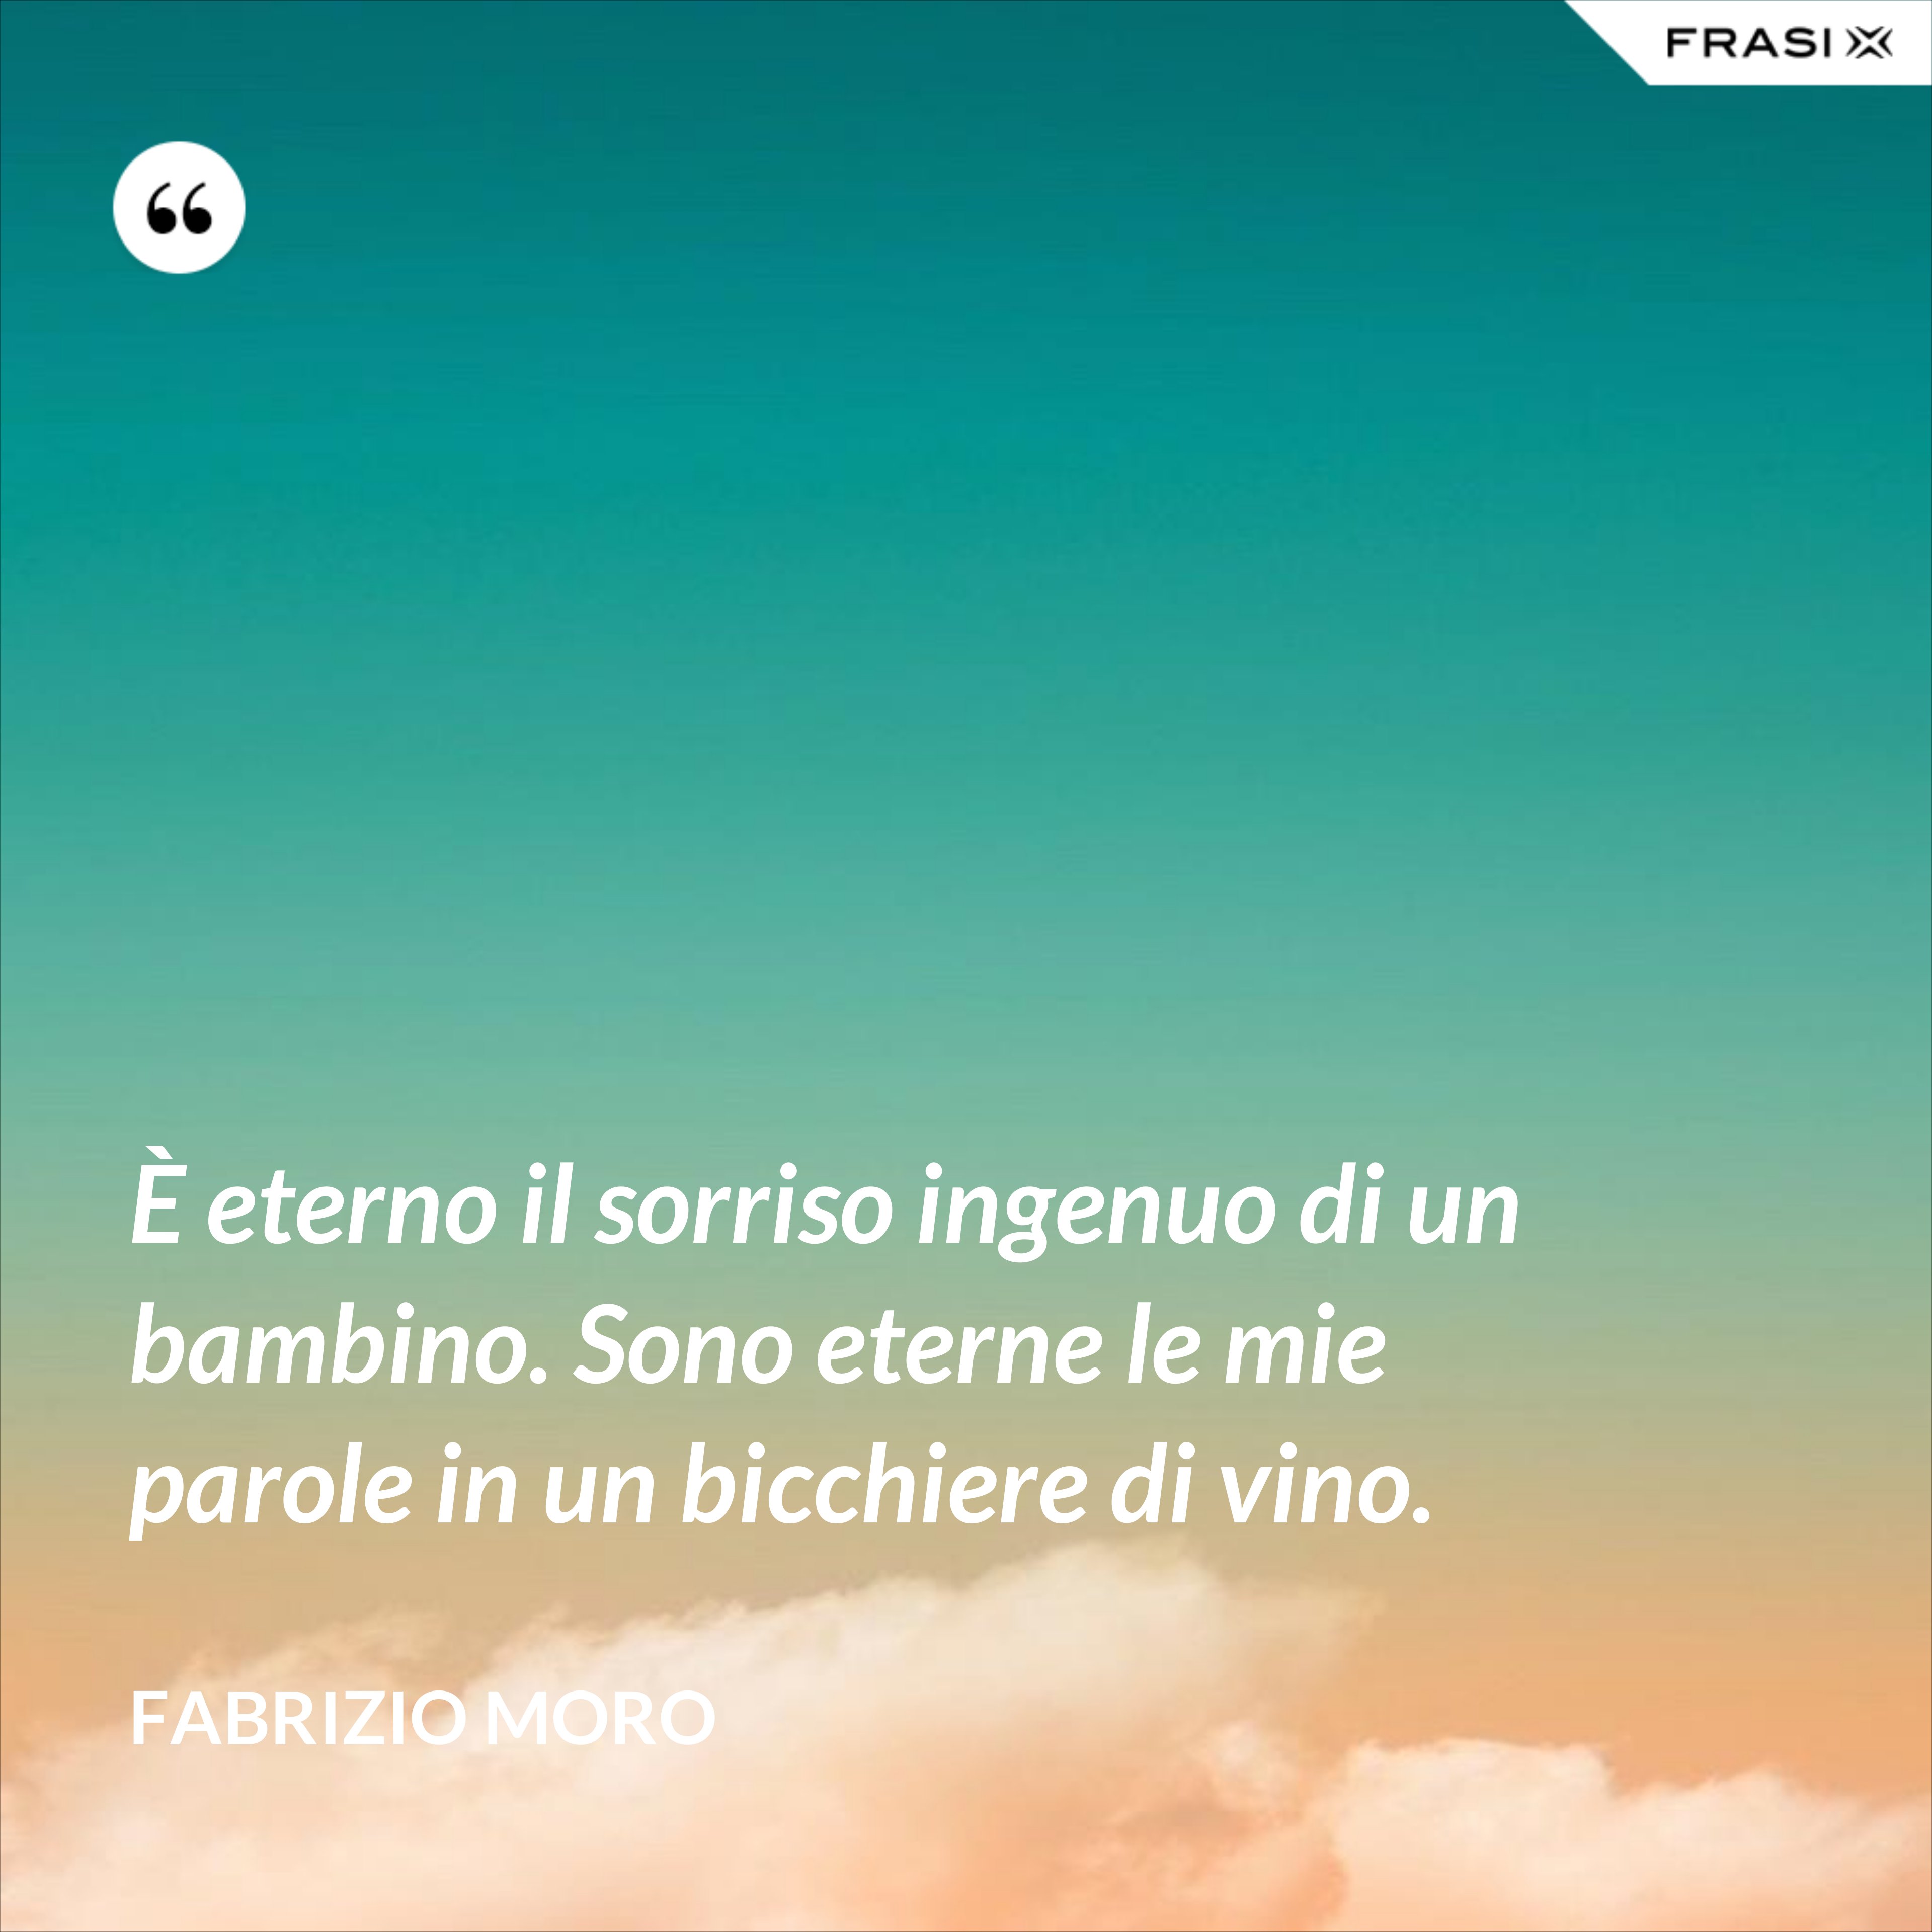 È eterno il sorriso ingenuo di un bambino. Sono eterne le mie parole in un bicchiere di vino. - Fabrizio Moro